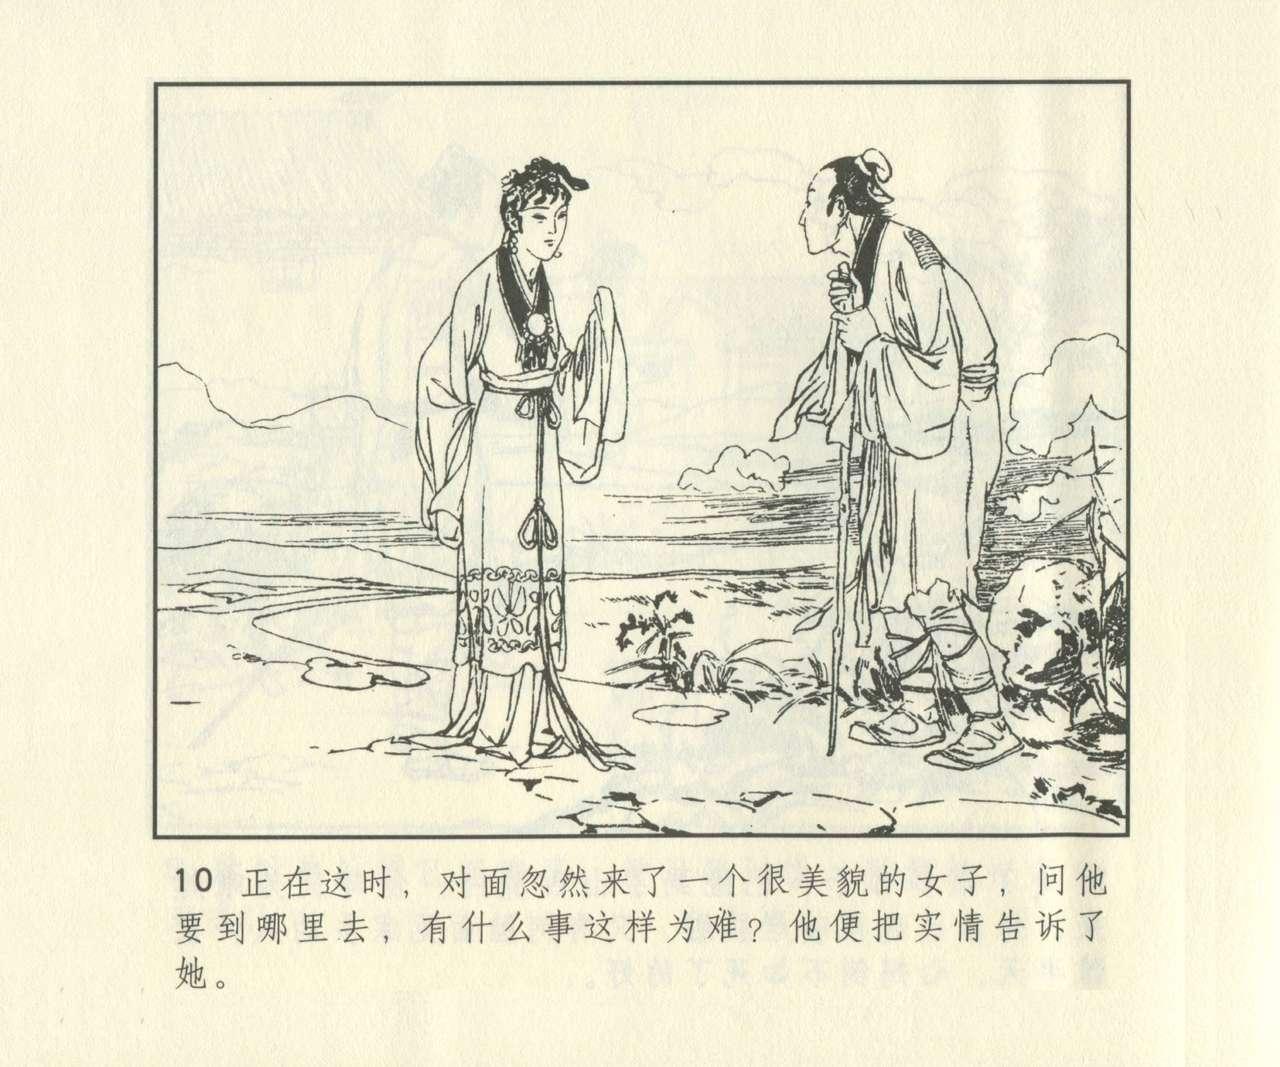 聊斋志异 张玮等绘 天津人民美术出版社 卷二十一 ~ 三十 626